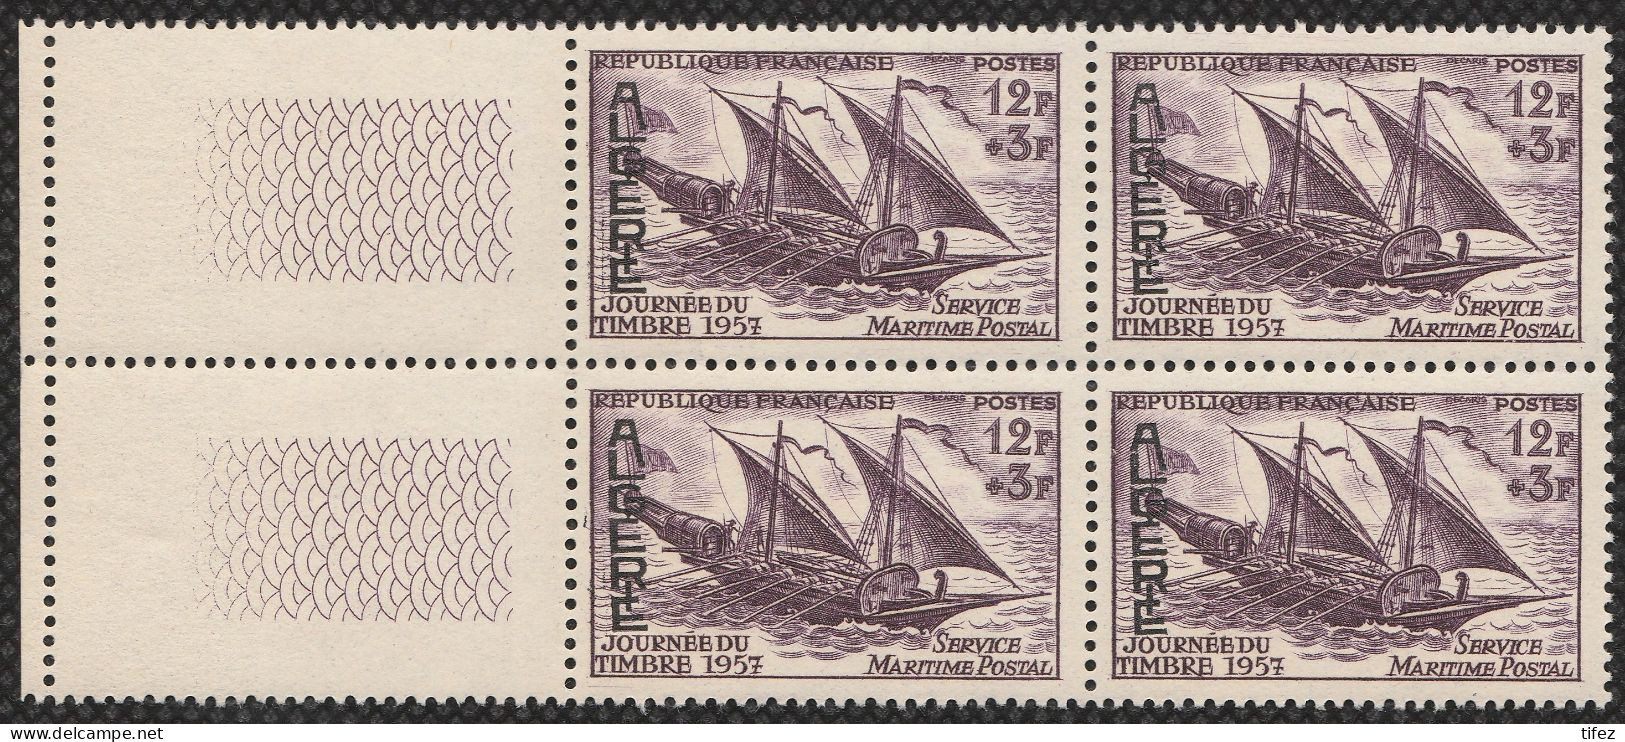 Année 1957-N°342 Neufs**MNH : Journée Du Timbre -Service Maritime Postal (bateau) Bloc De 4  (g-1) - Unused Stamps